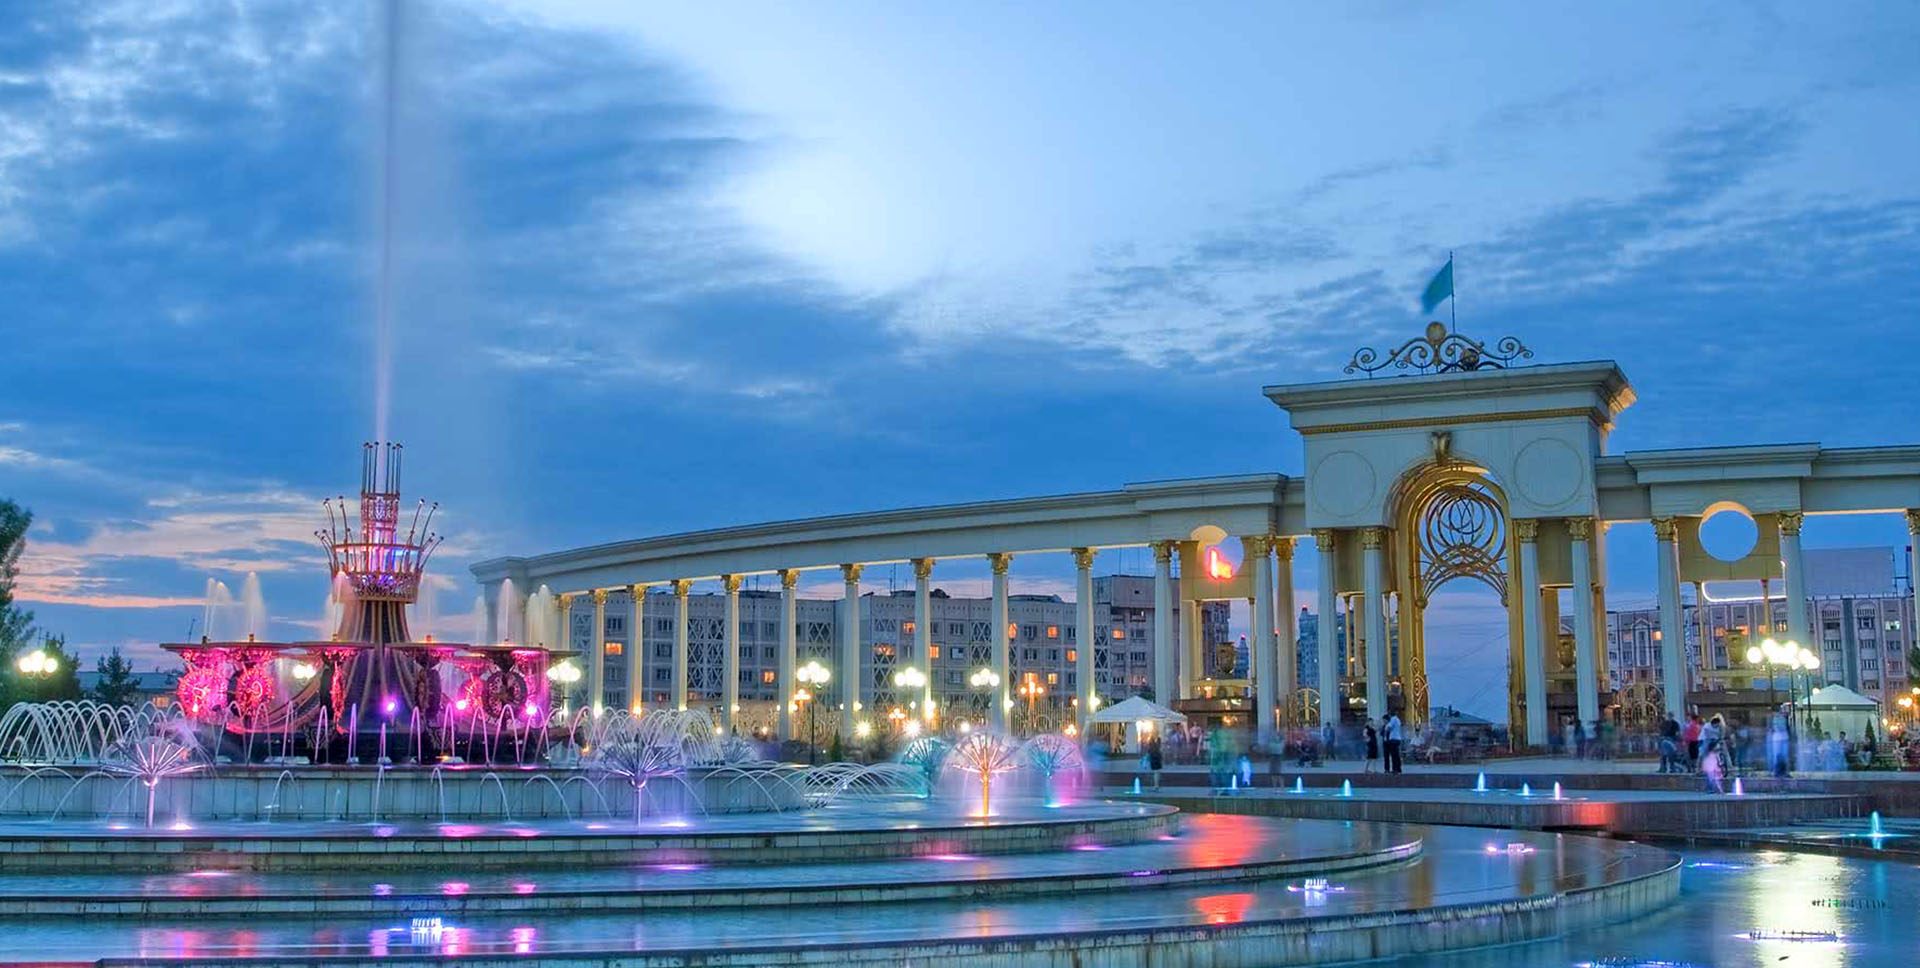 جاذبه های دیدنی قزاقستان رو می شناسید ؟